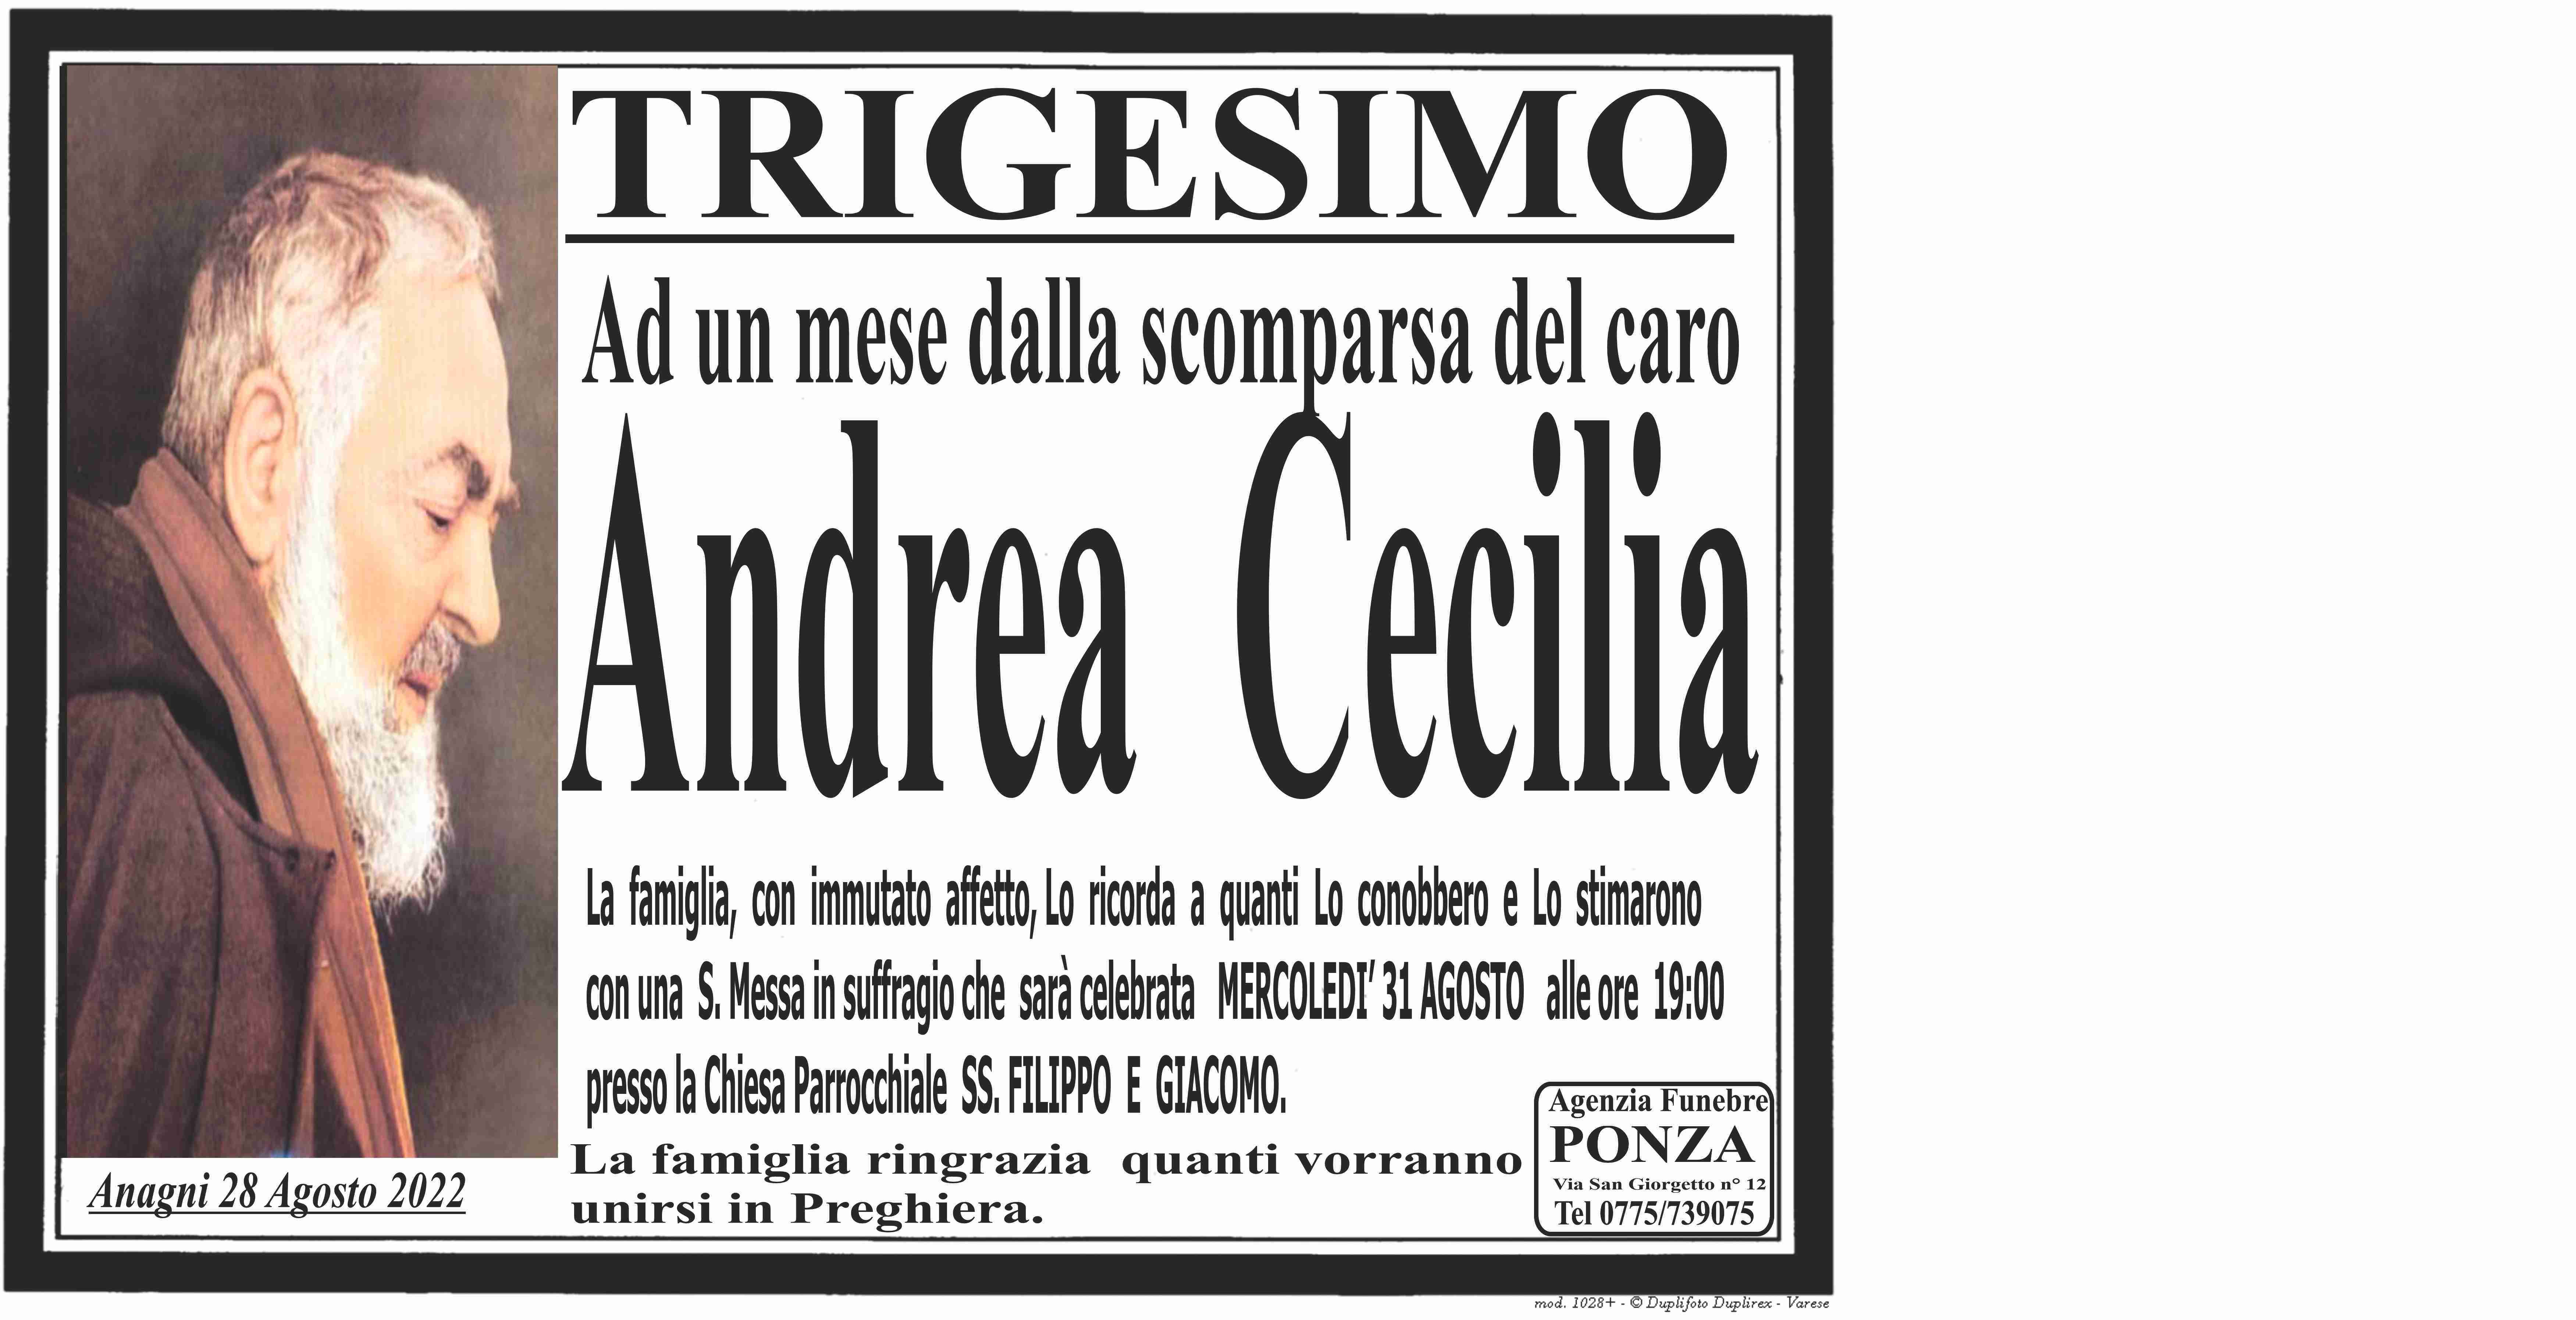 Andrea Cecilia